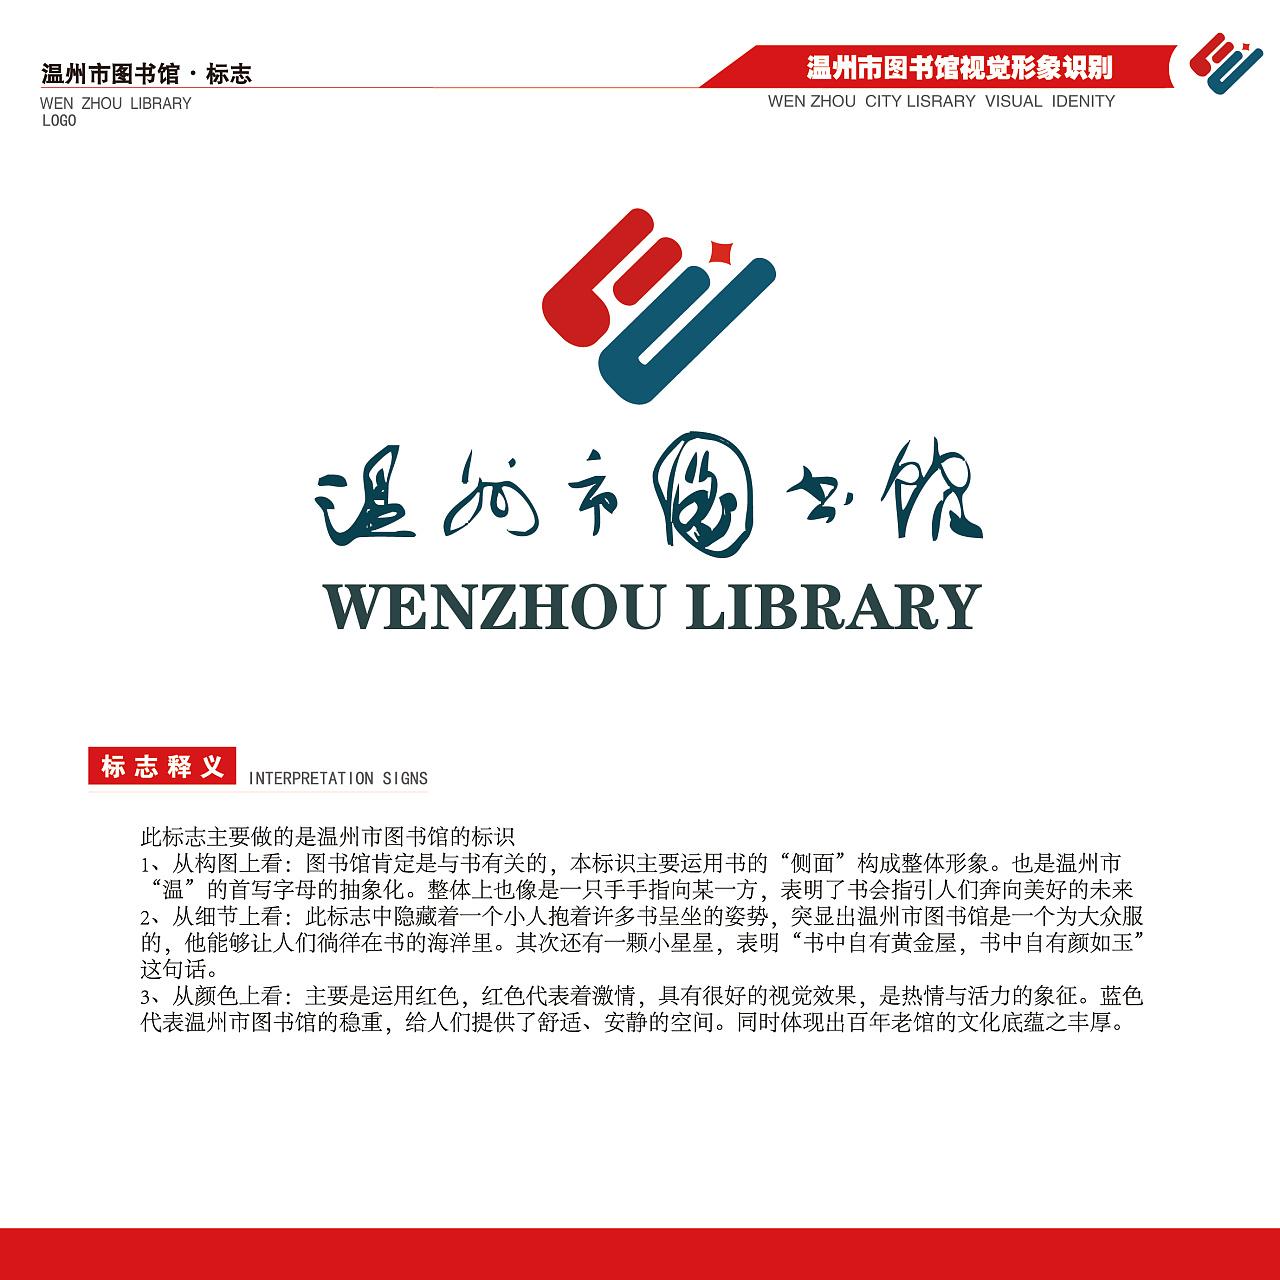 温州市图书馆logo图片